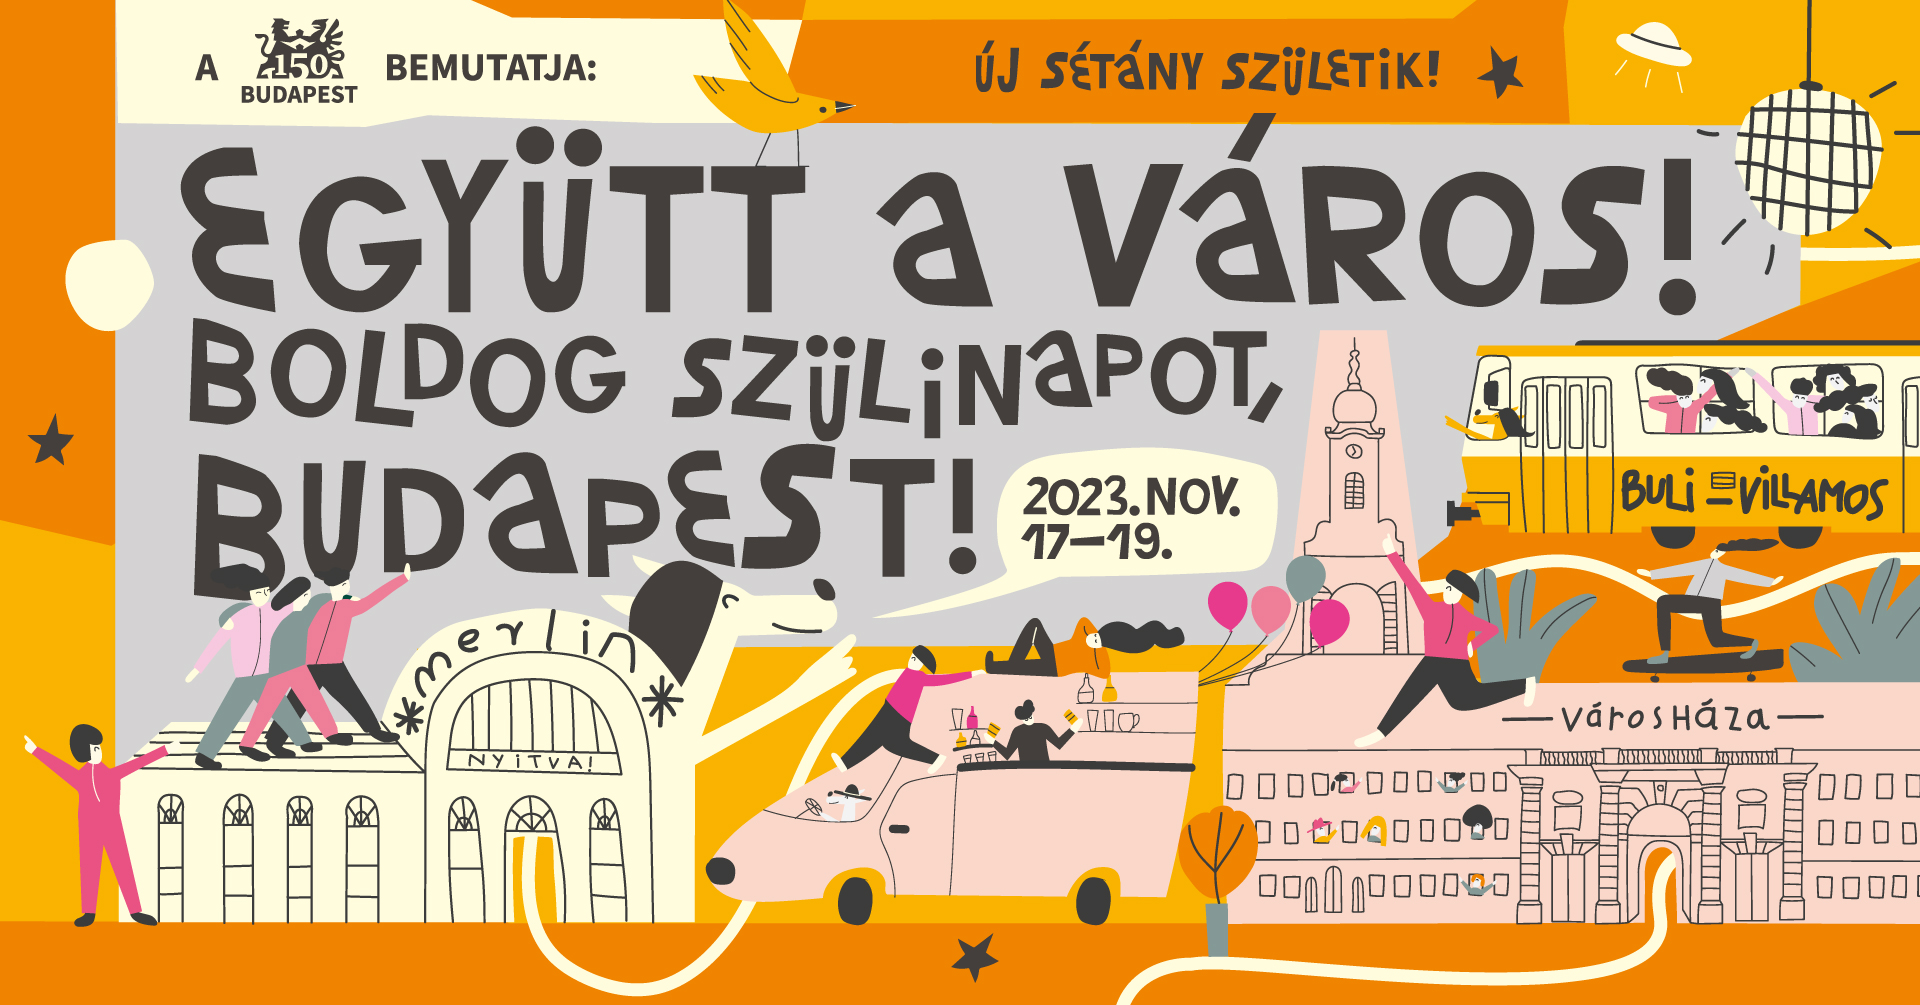 Happy Birthday Budapest, City Hall Budapest, 17 - 19 November